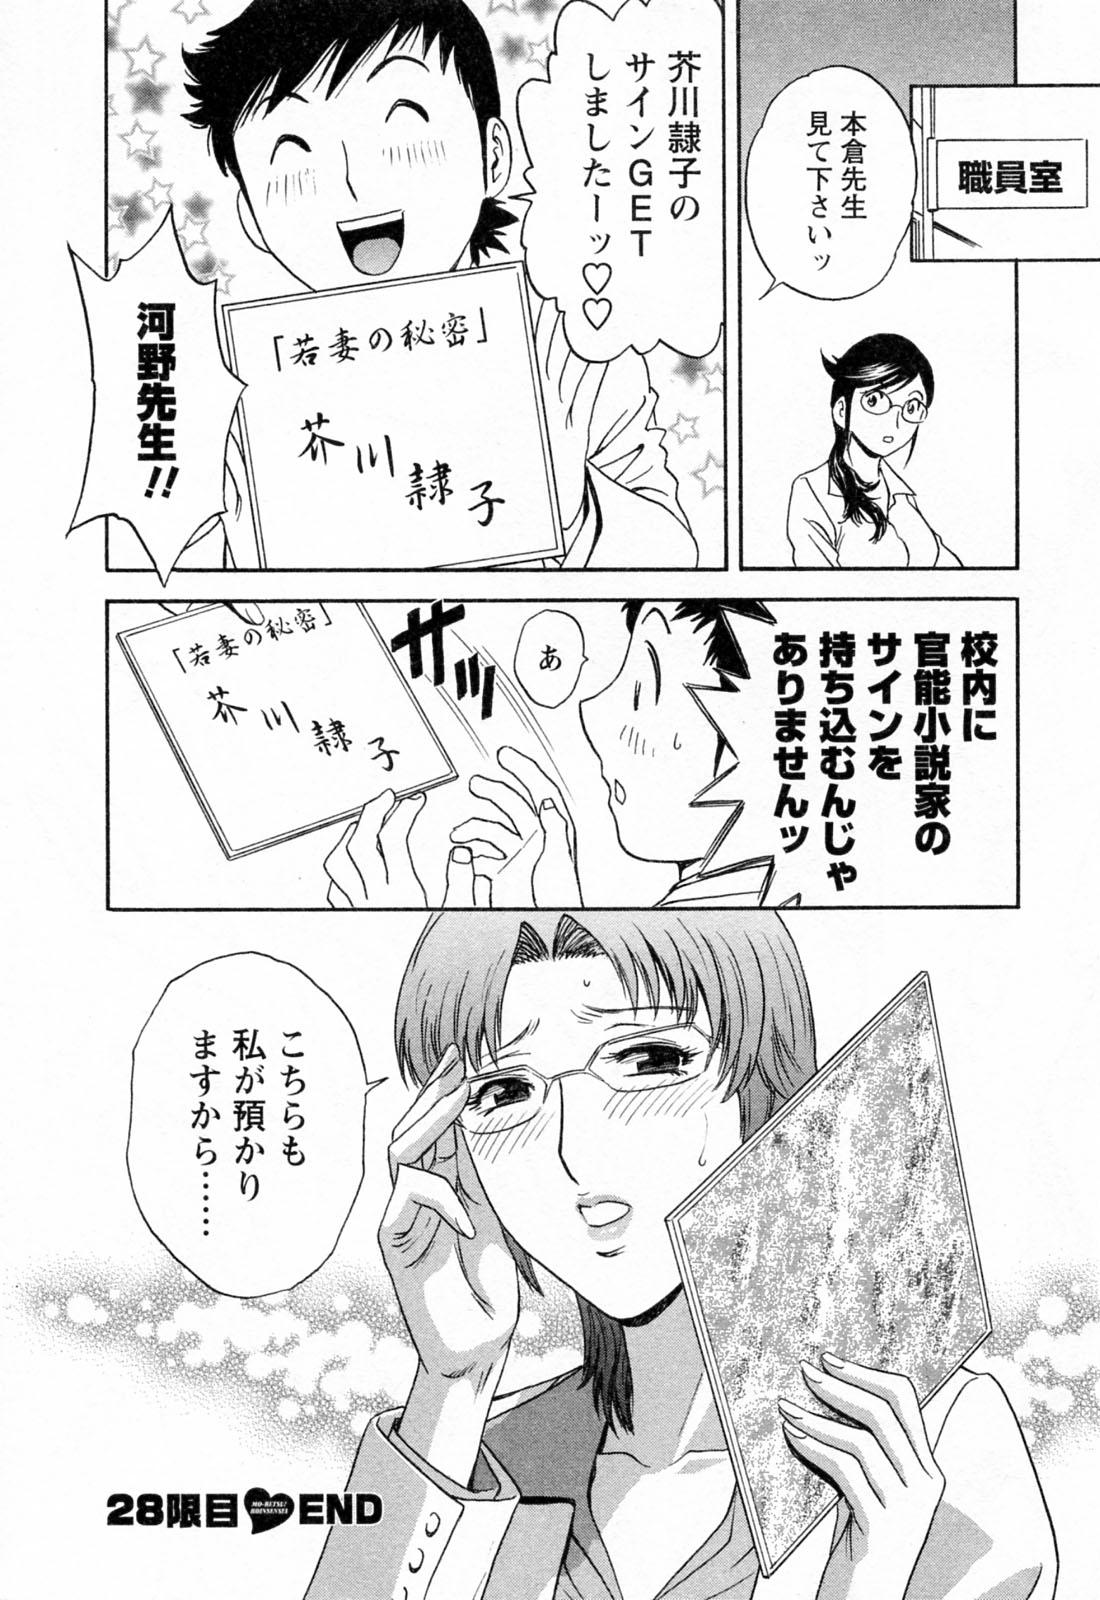 [Hidemaru] Mo-Retsu! Boin Sensei (Boing Boing Teacher) Vol.4 29